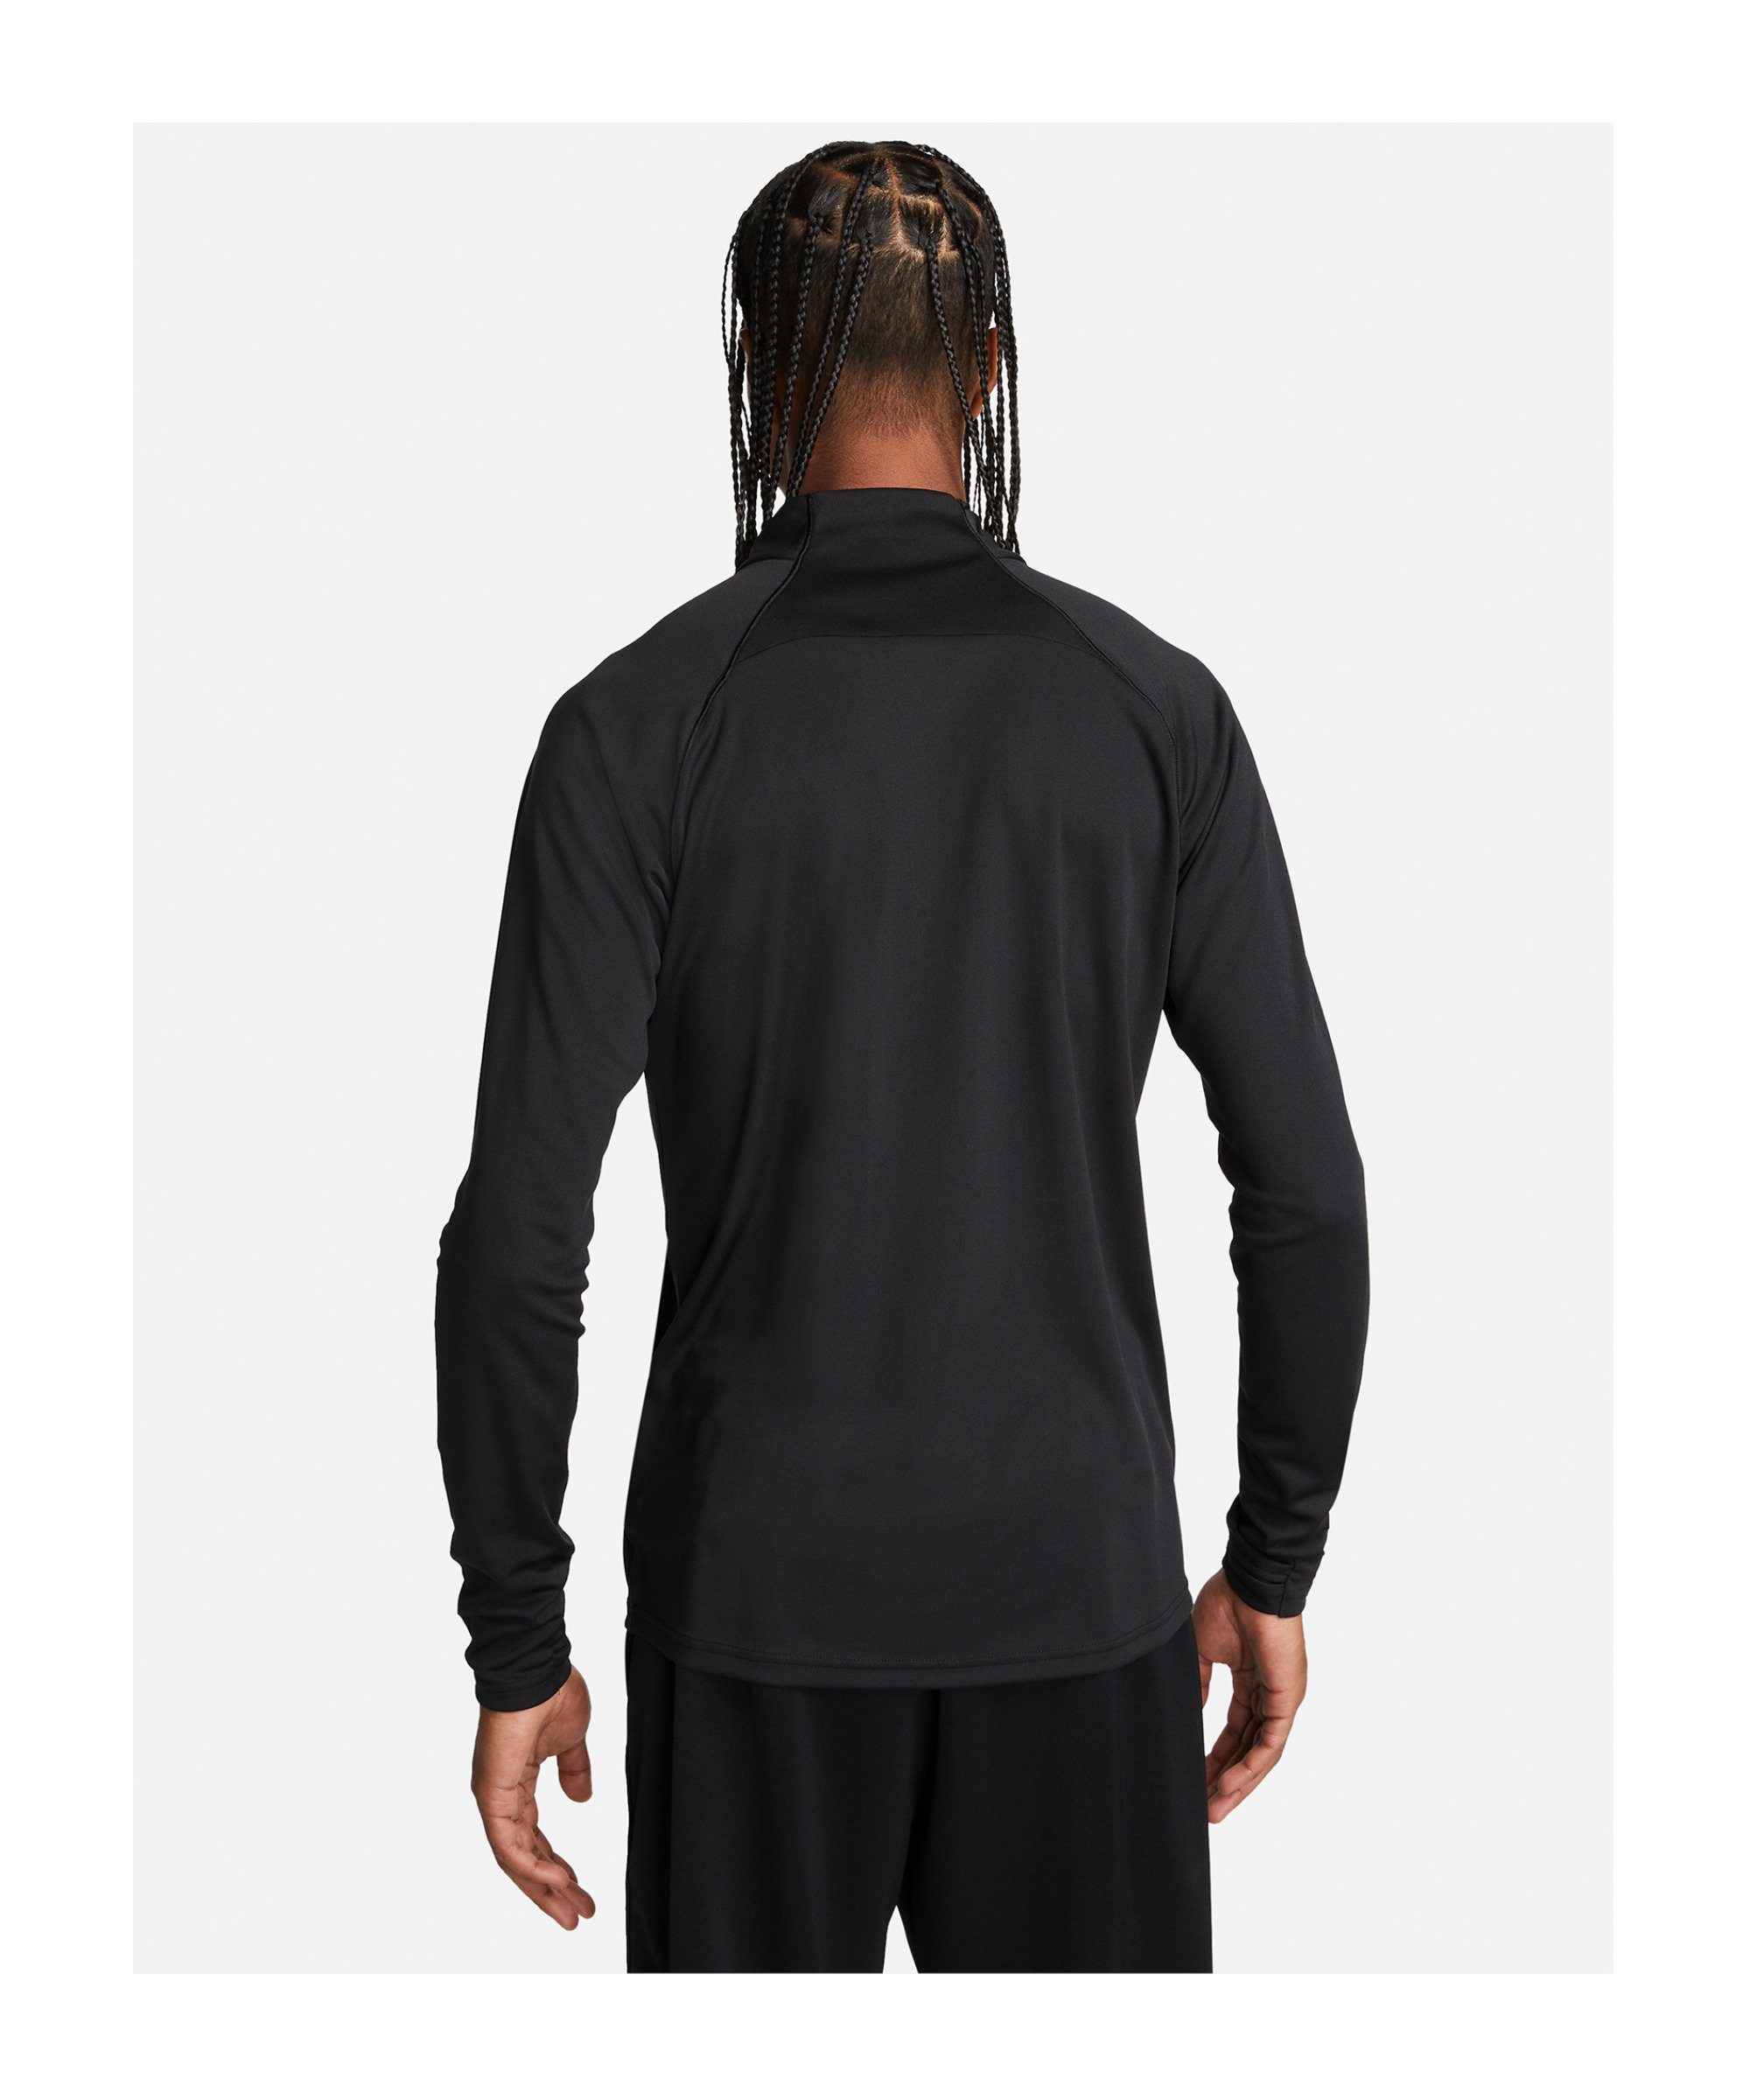 schwarzweiss Nike Sweatshirt Air Sweatshirt PK Sportswear